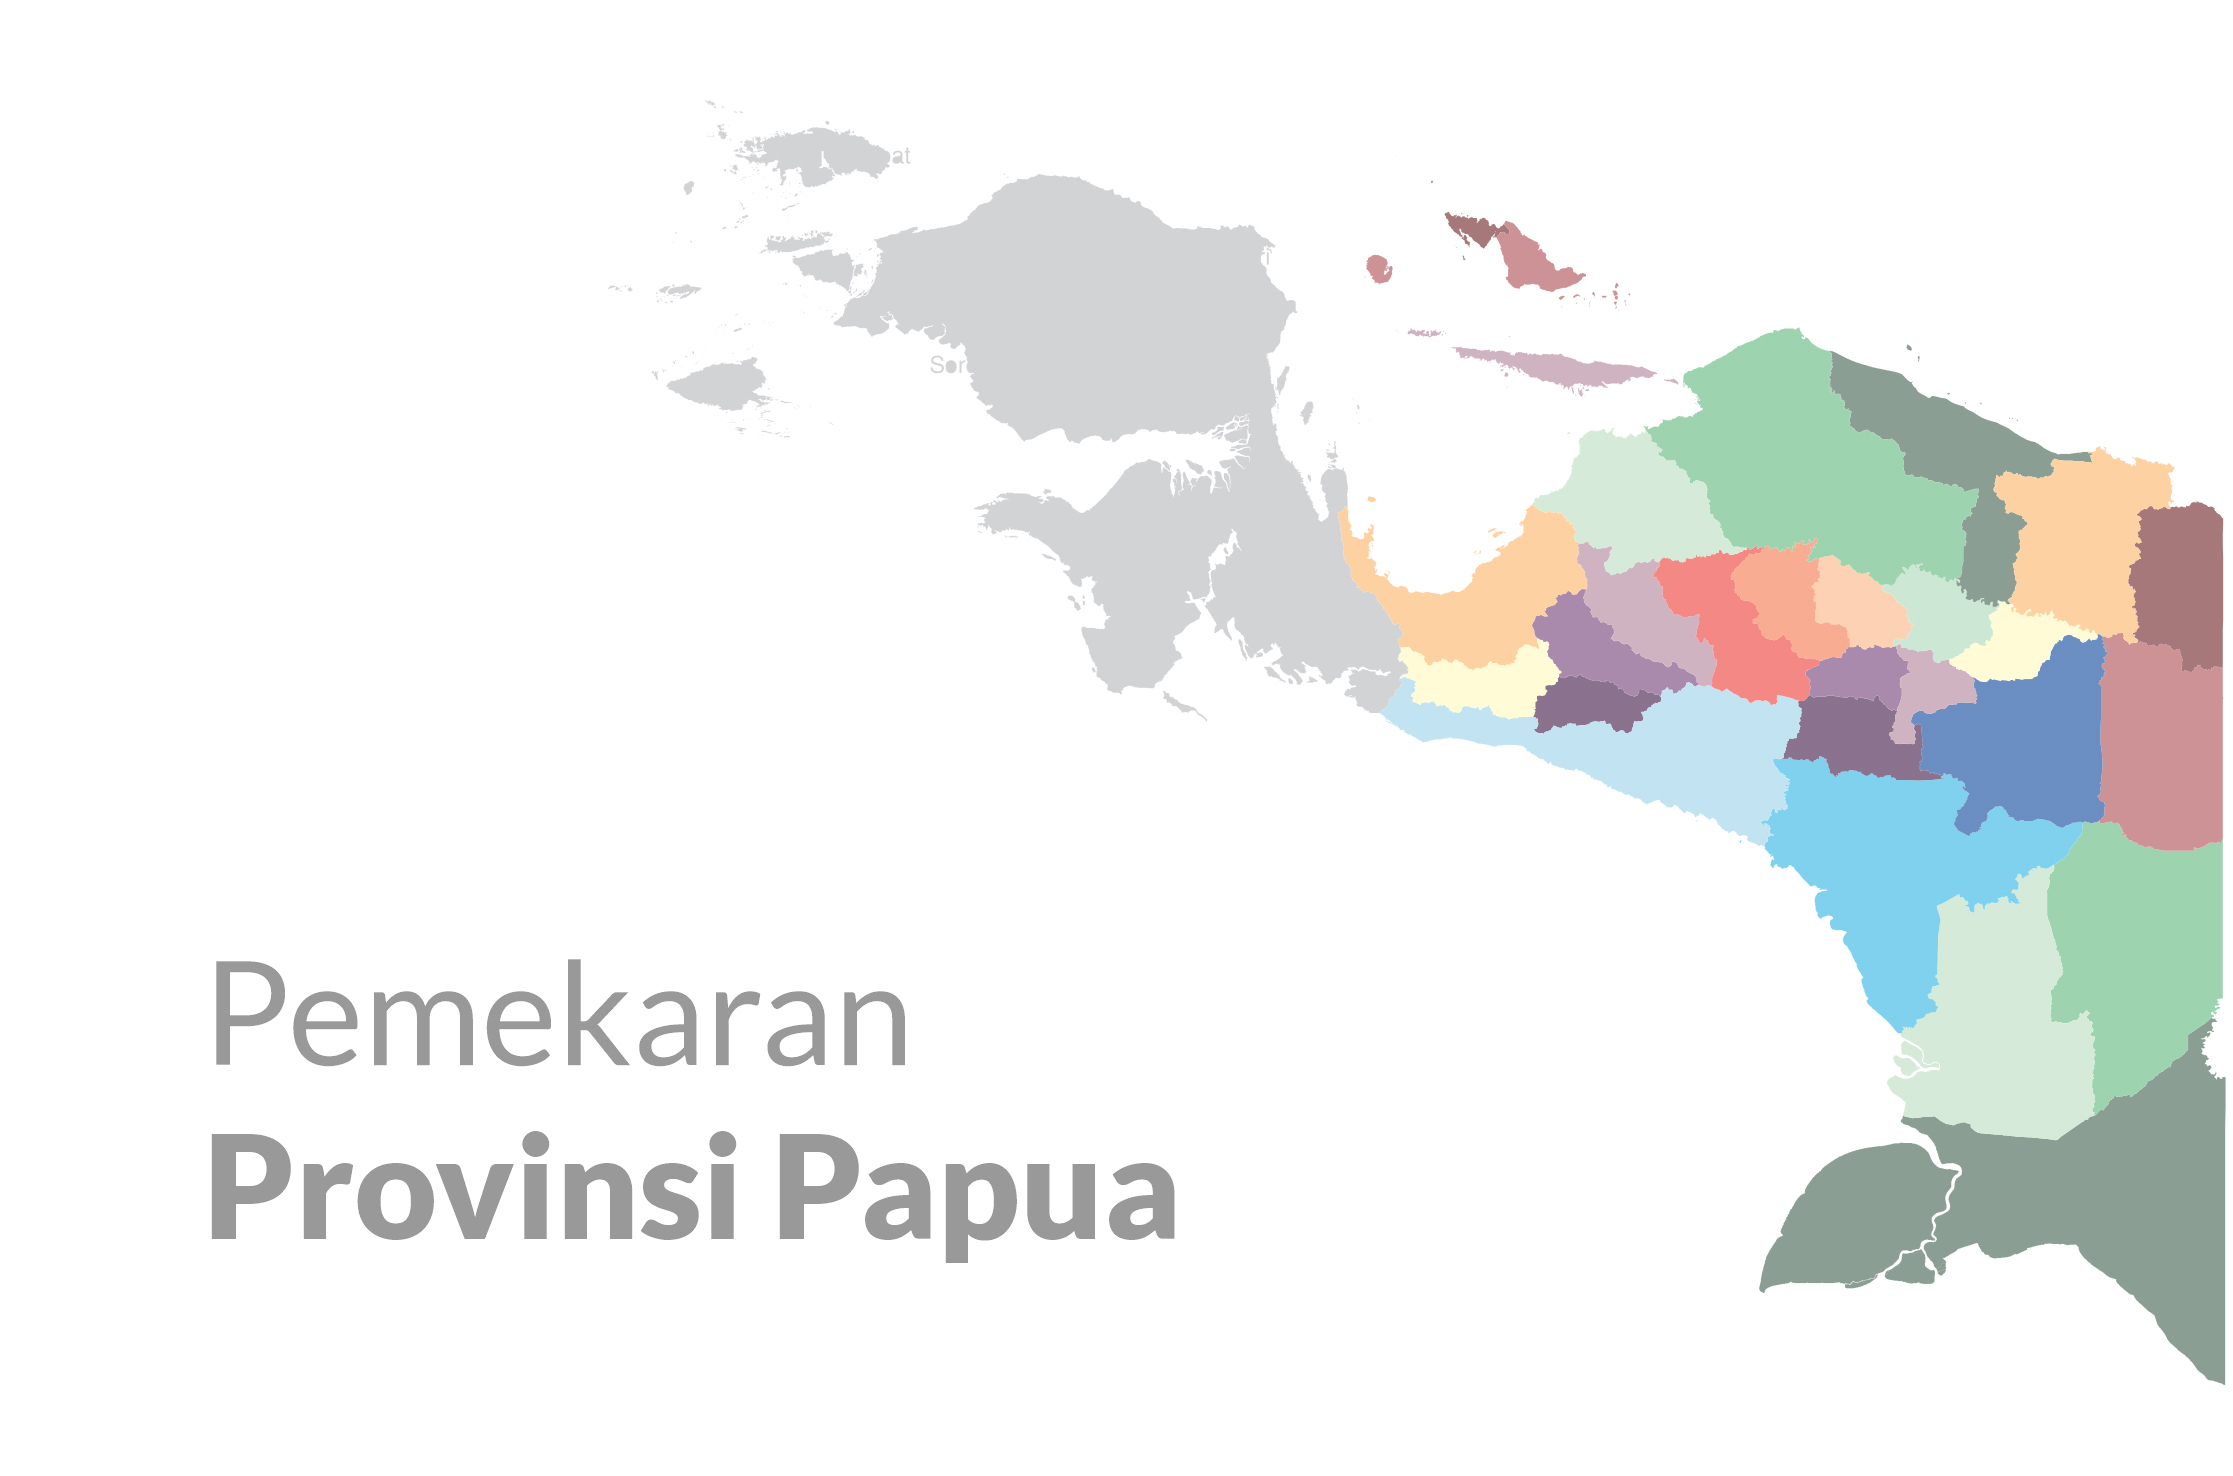 Pemekaran Papua demi Kesejahteraan